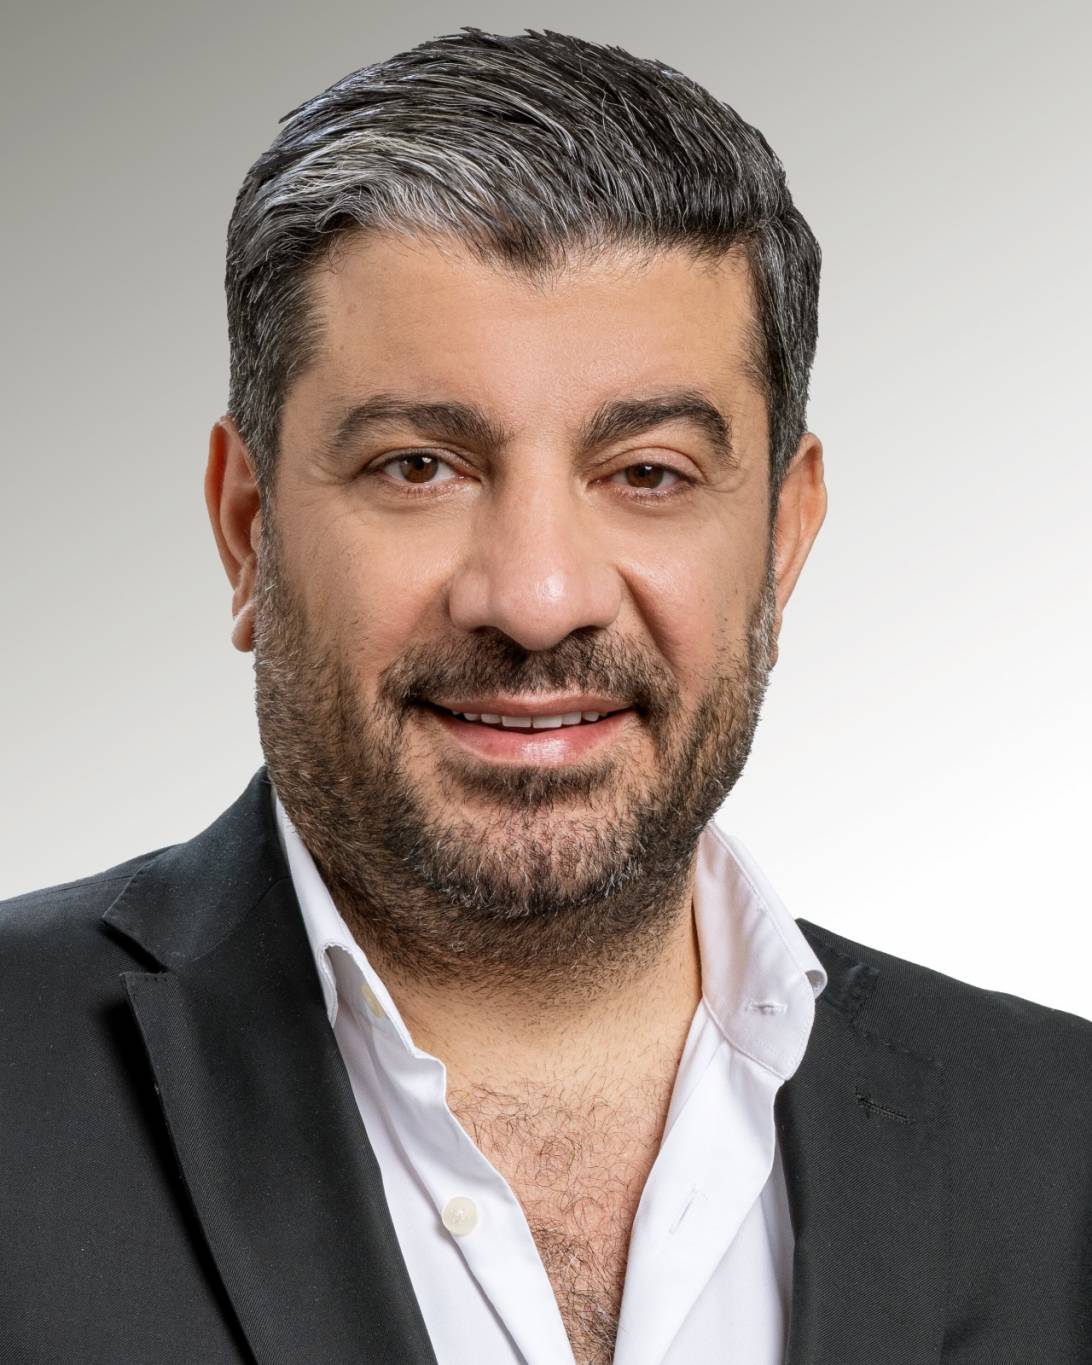 زياد حمزة مدير عام القطاع الإذاعي والموسيقي